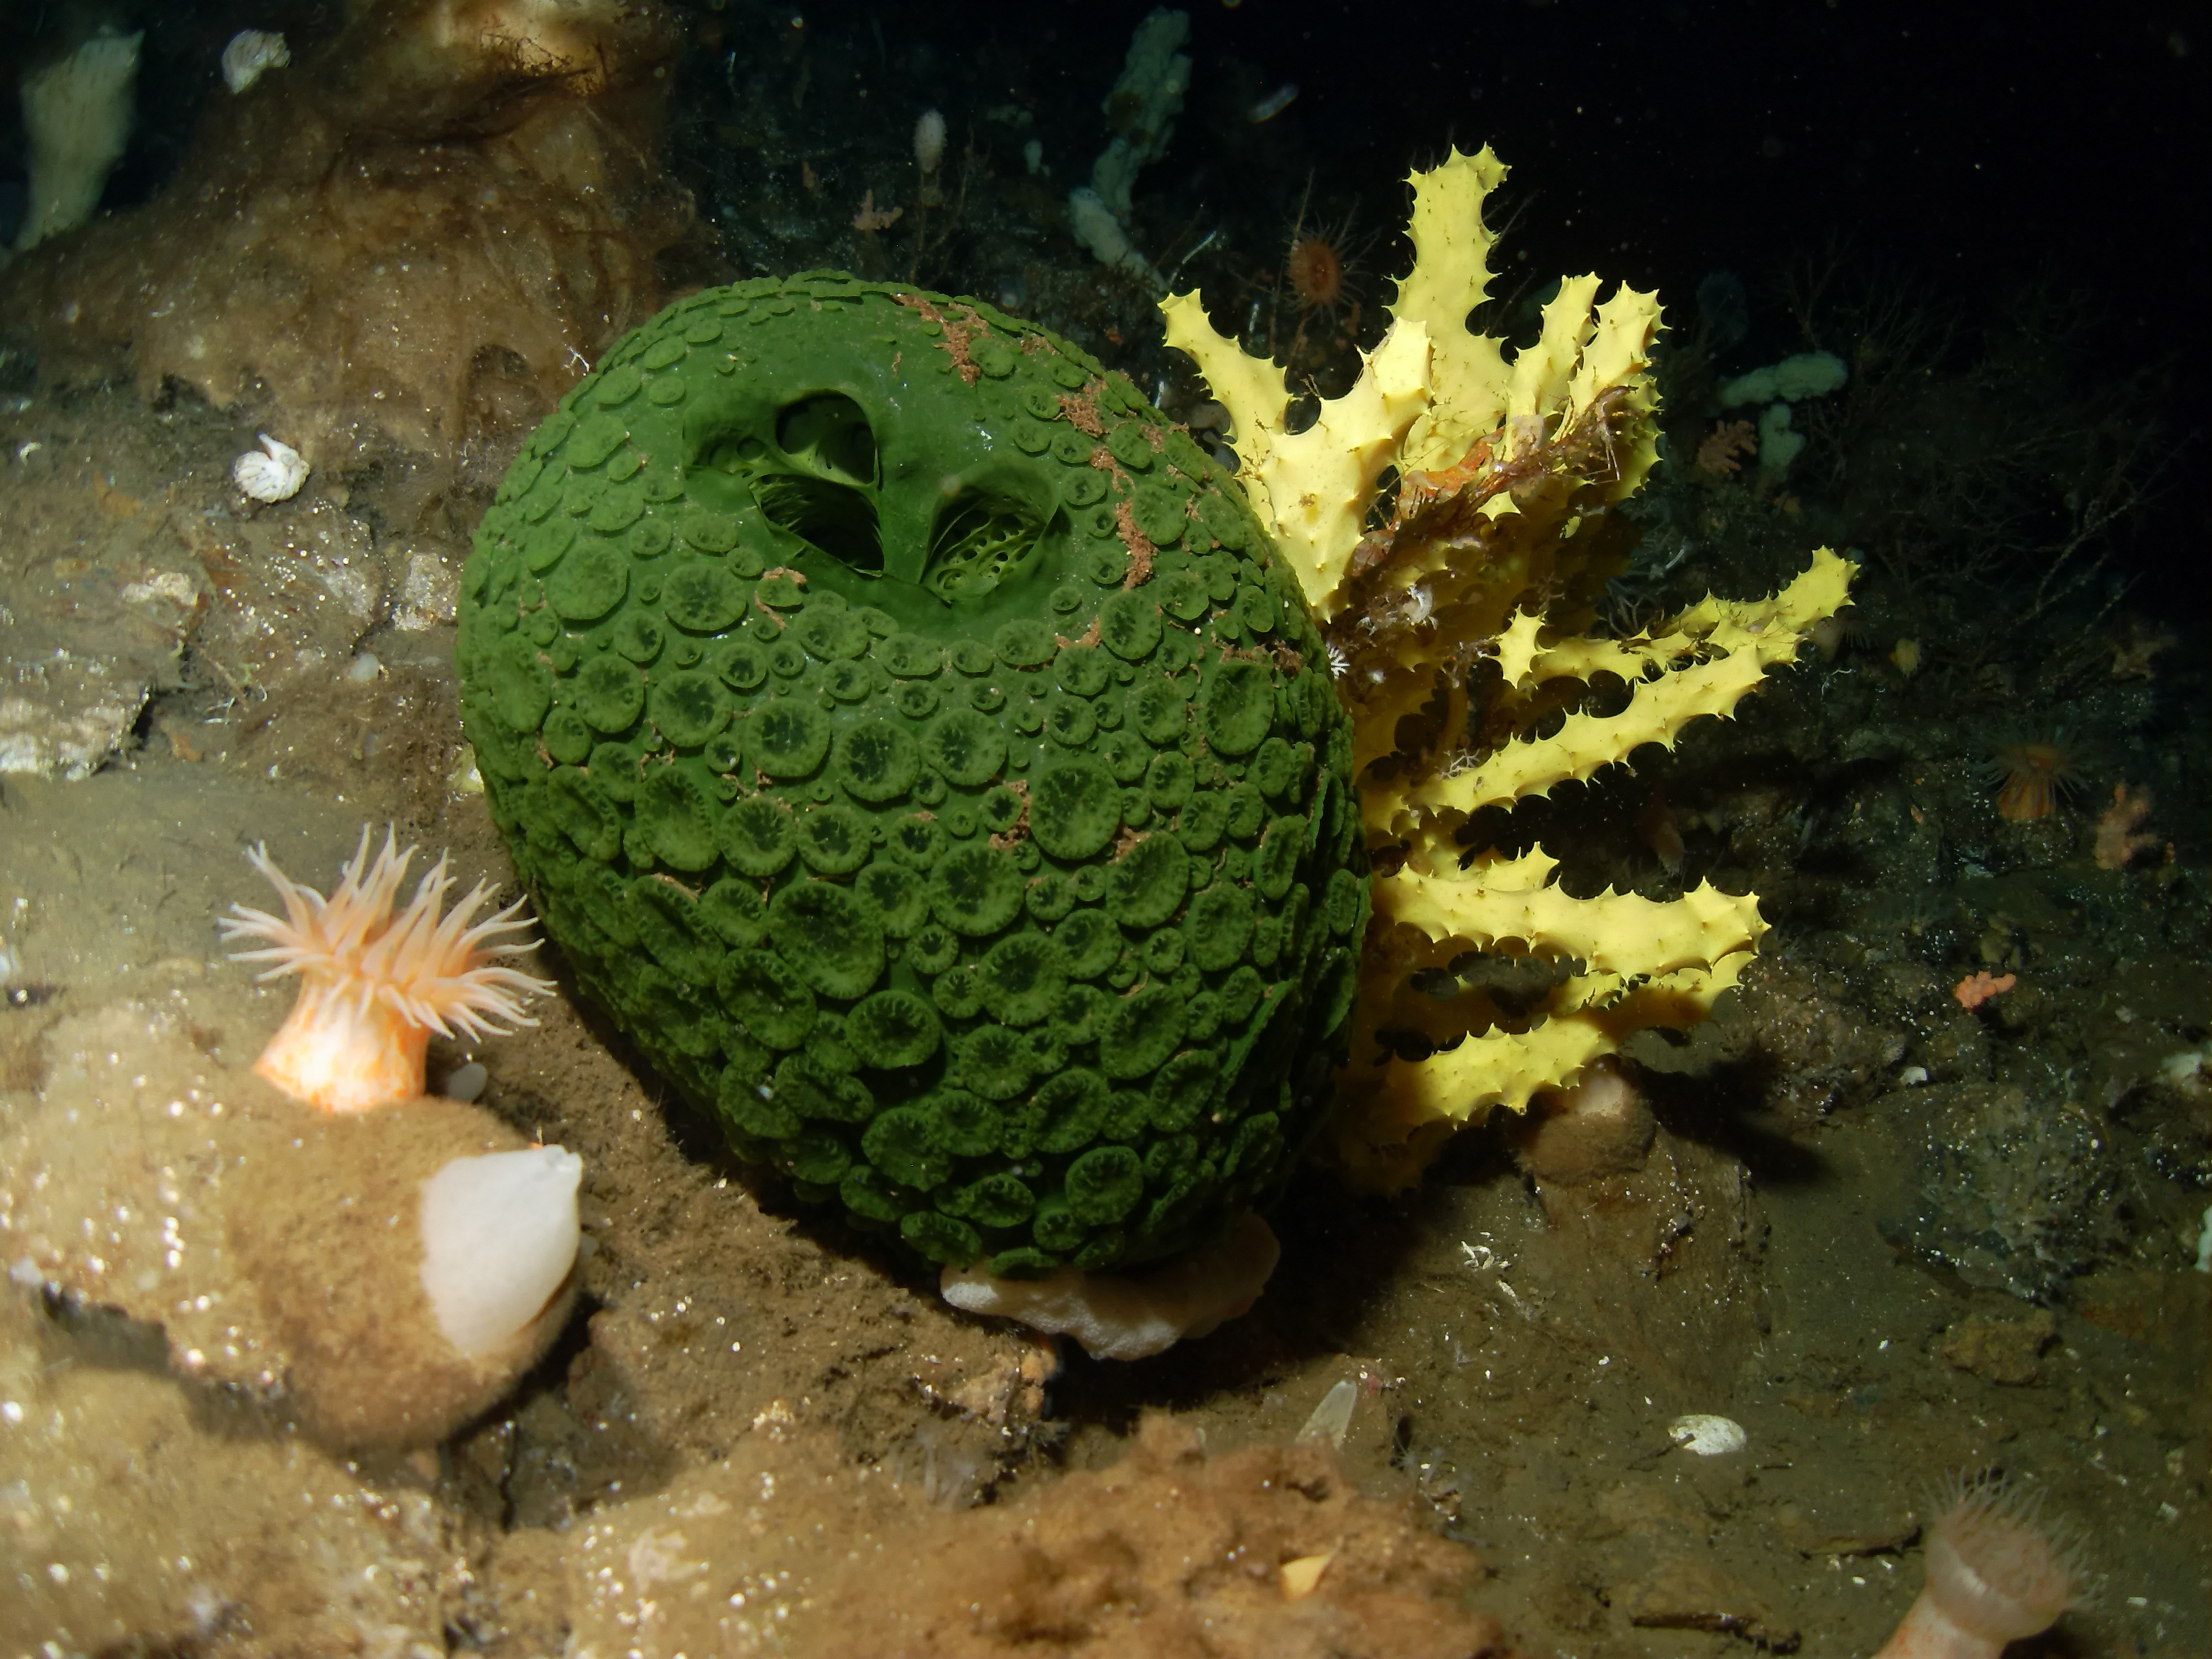 A sea sponge on the seafloor.